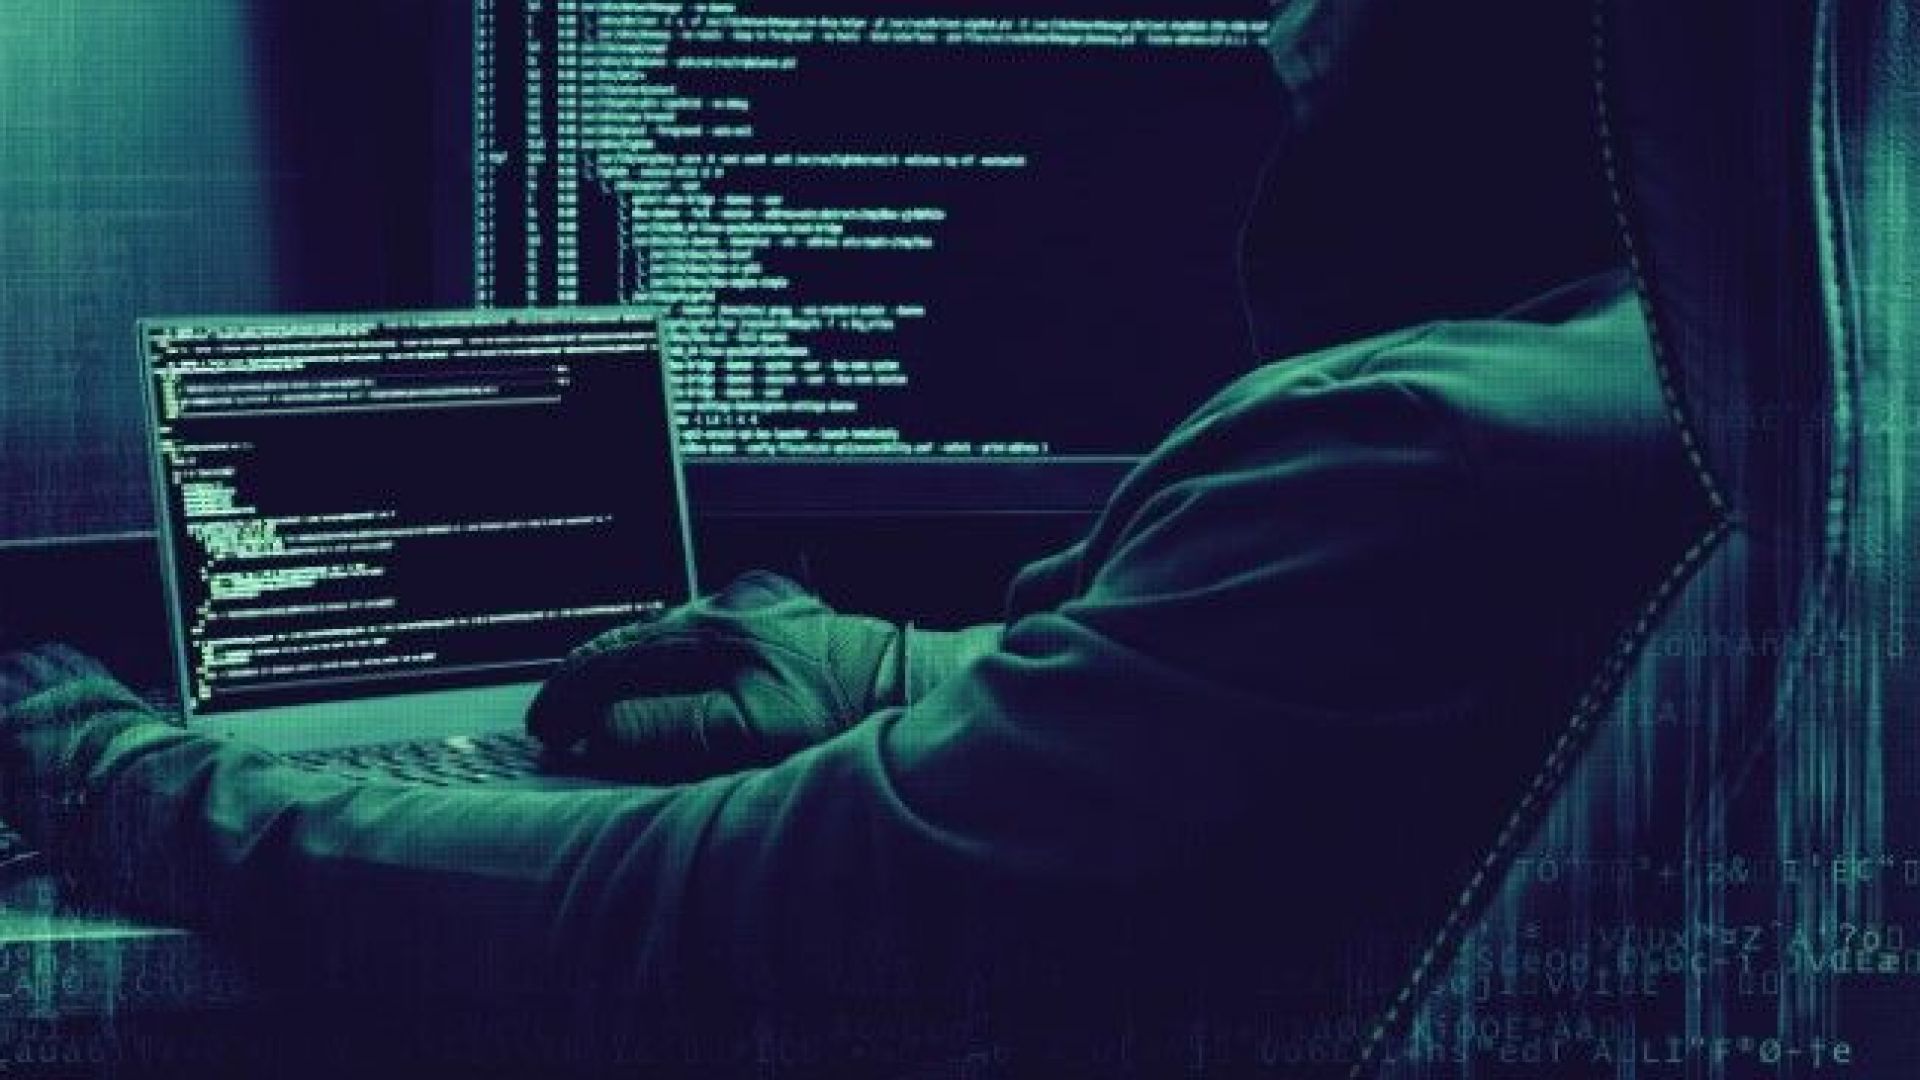 Хакери, обвинявани във връзки с Русия, са атакували три енергийни компании